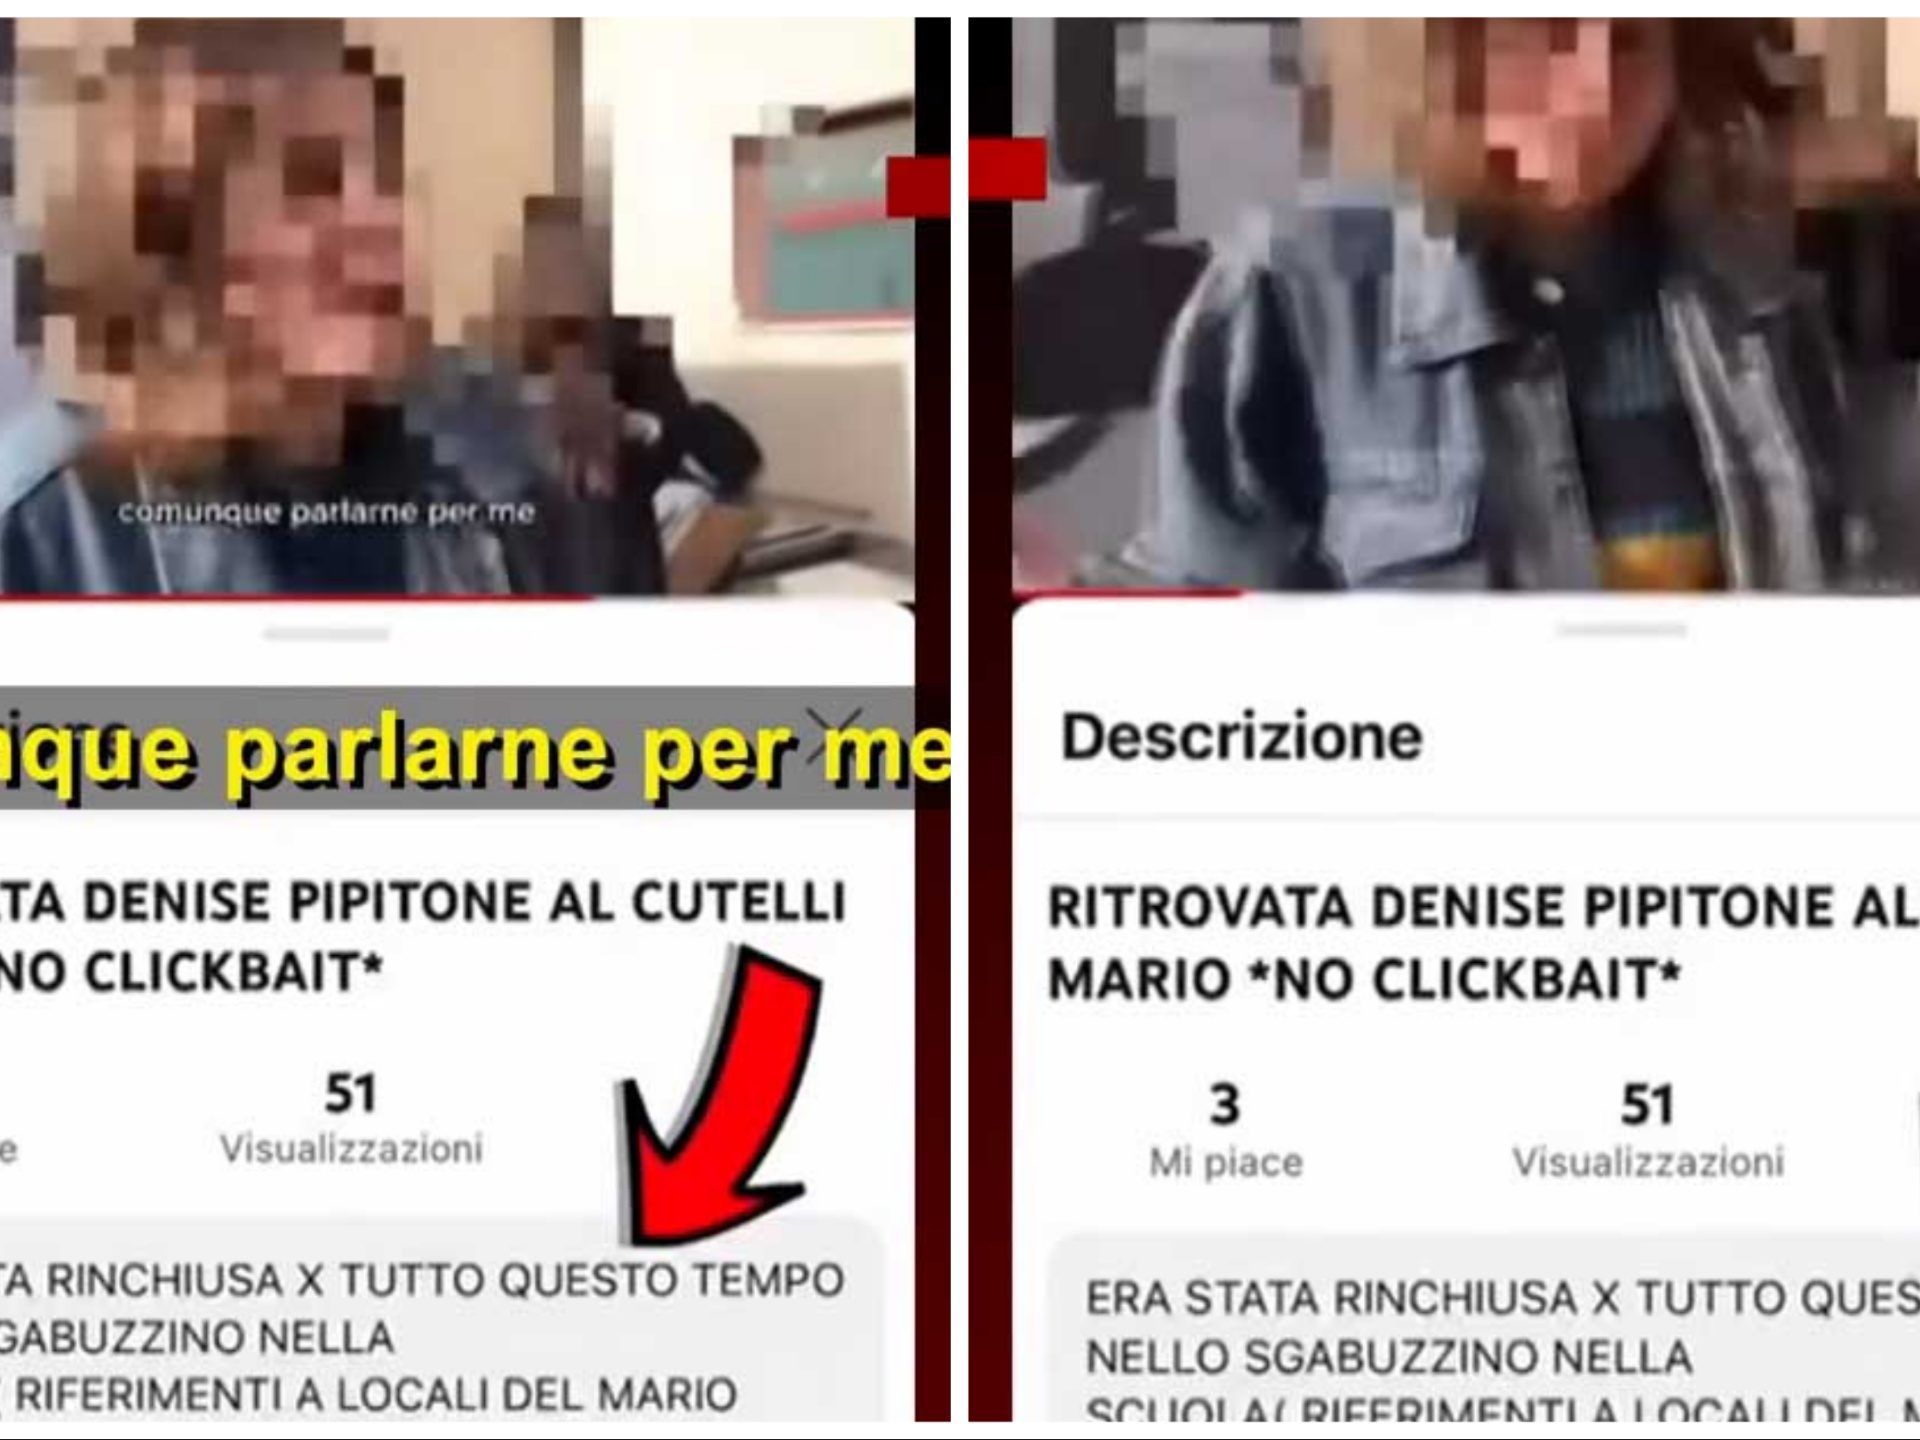 Denise Pipitone ritrovata, video shock di due studentesse scatena polemica